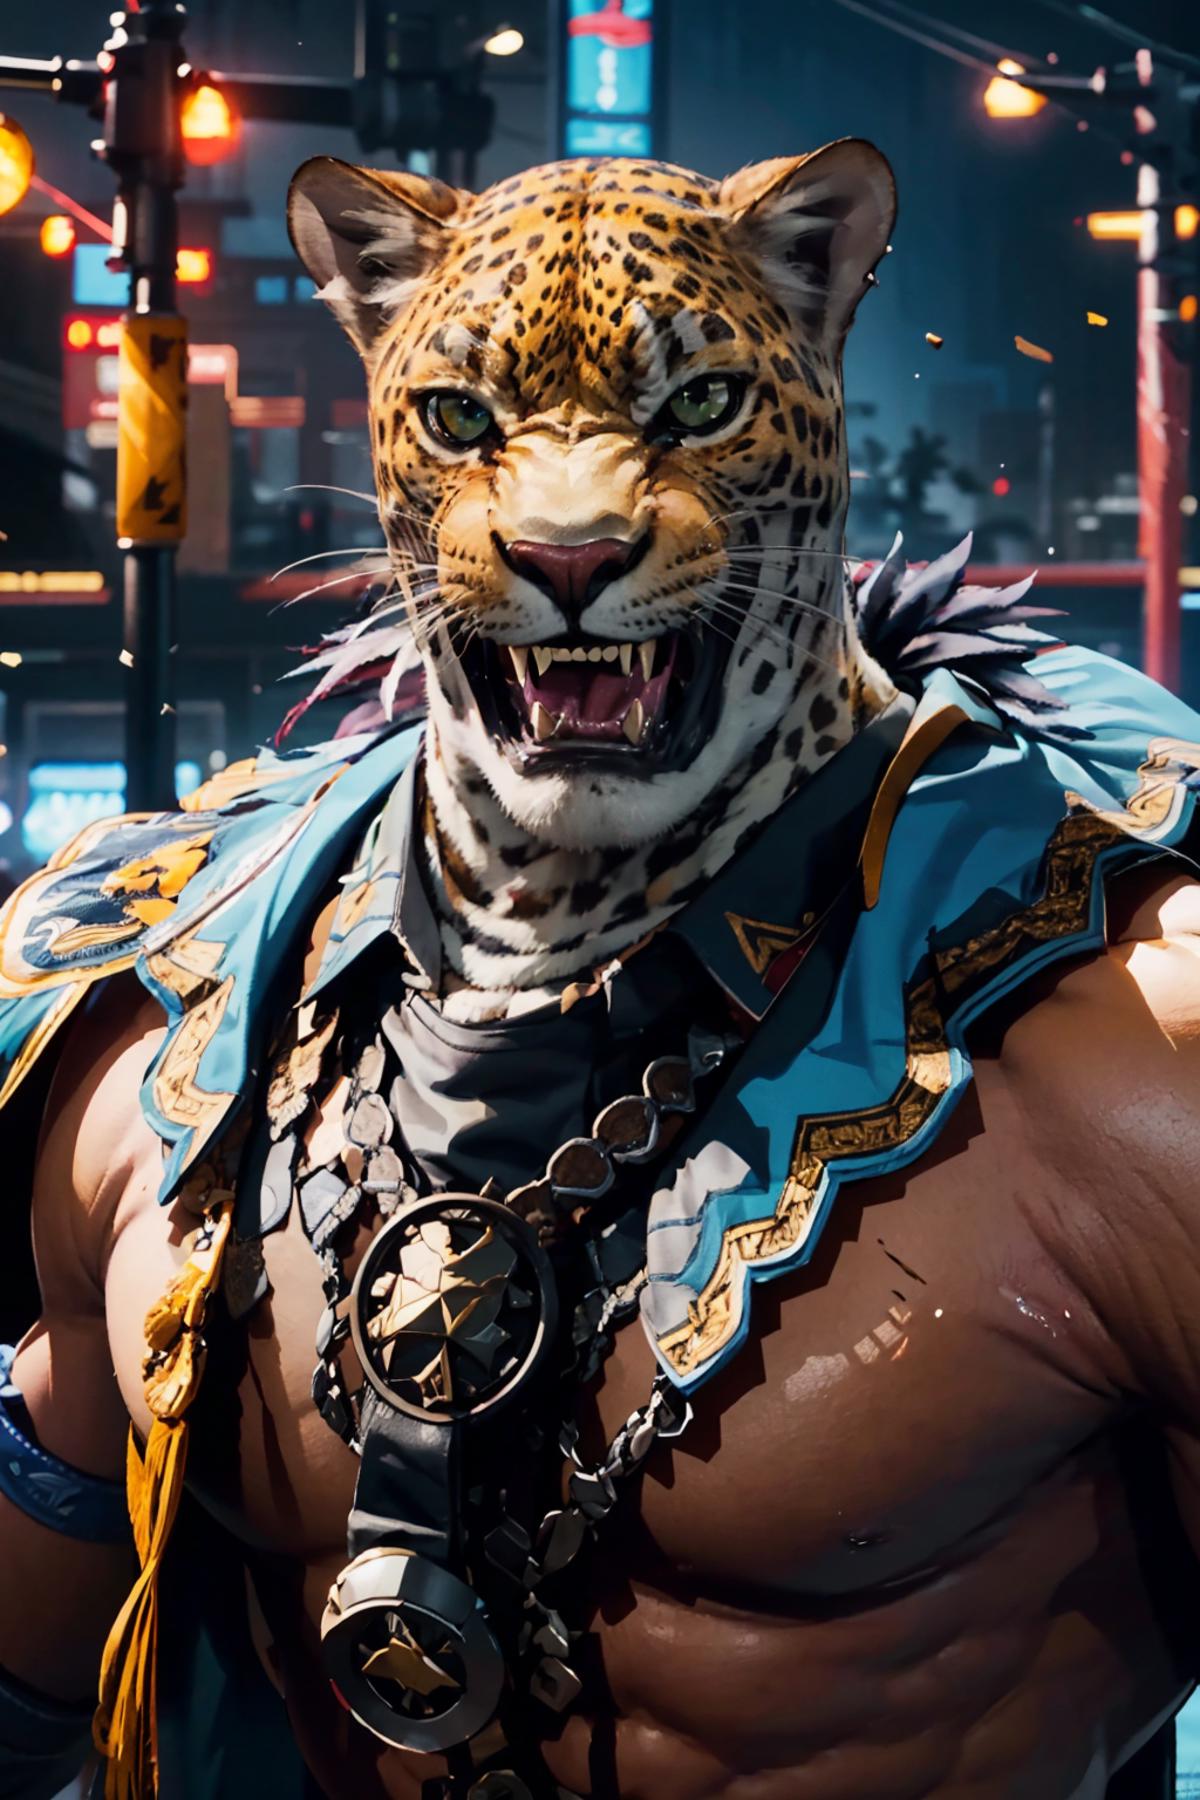 King (Tekken) image by no_name000